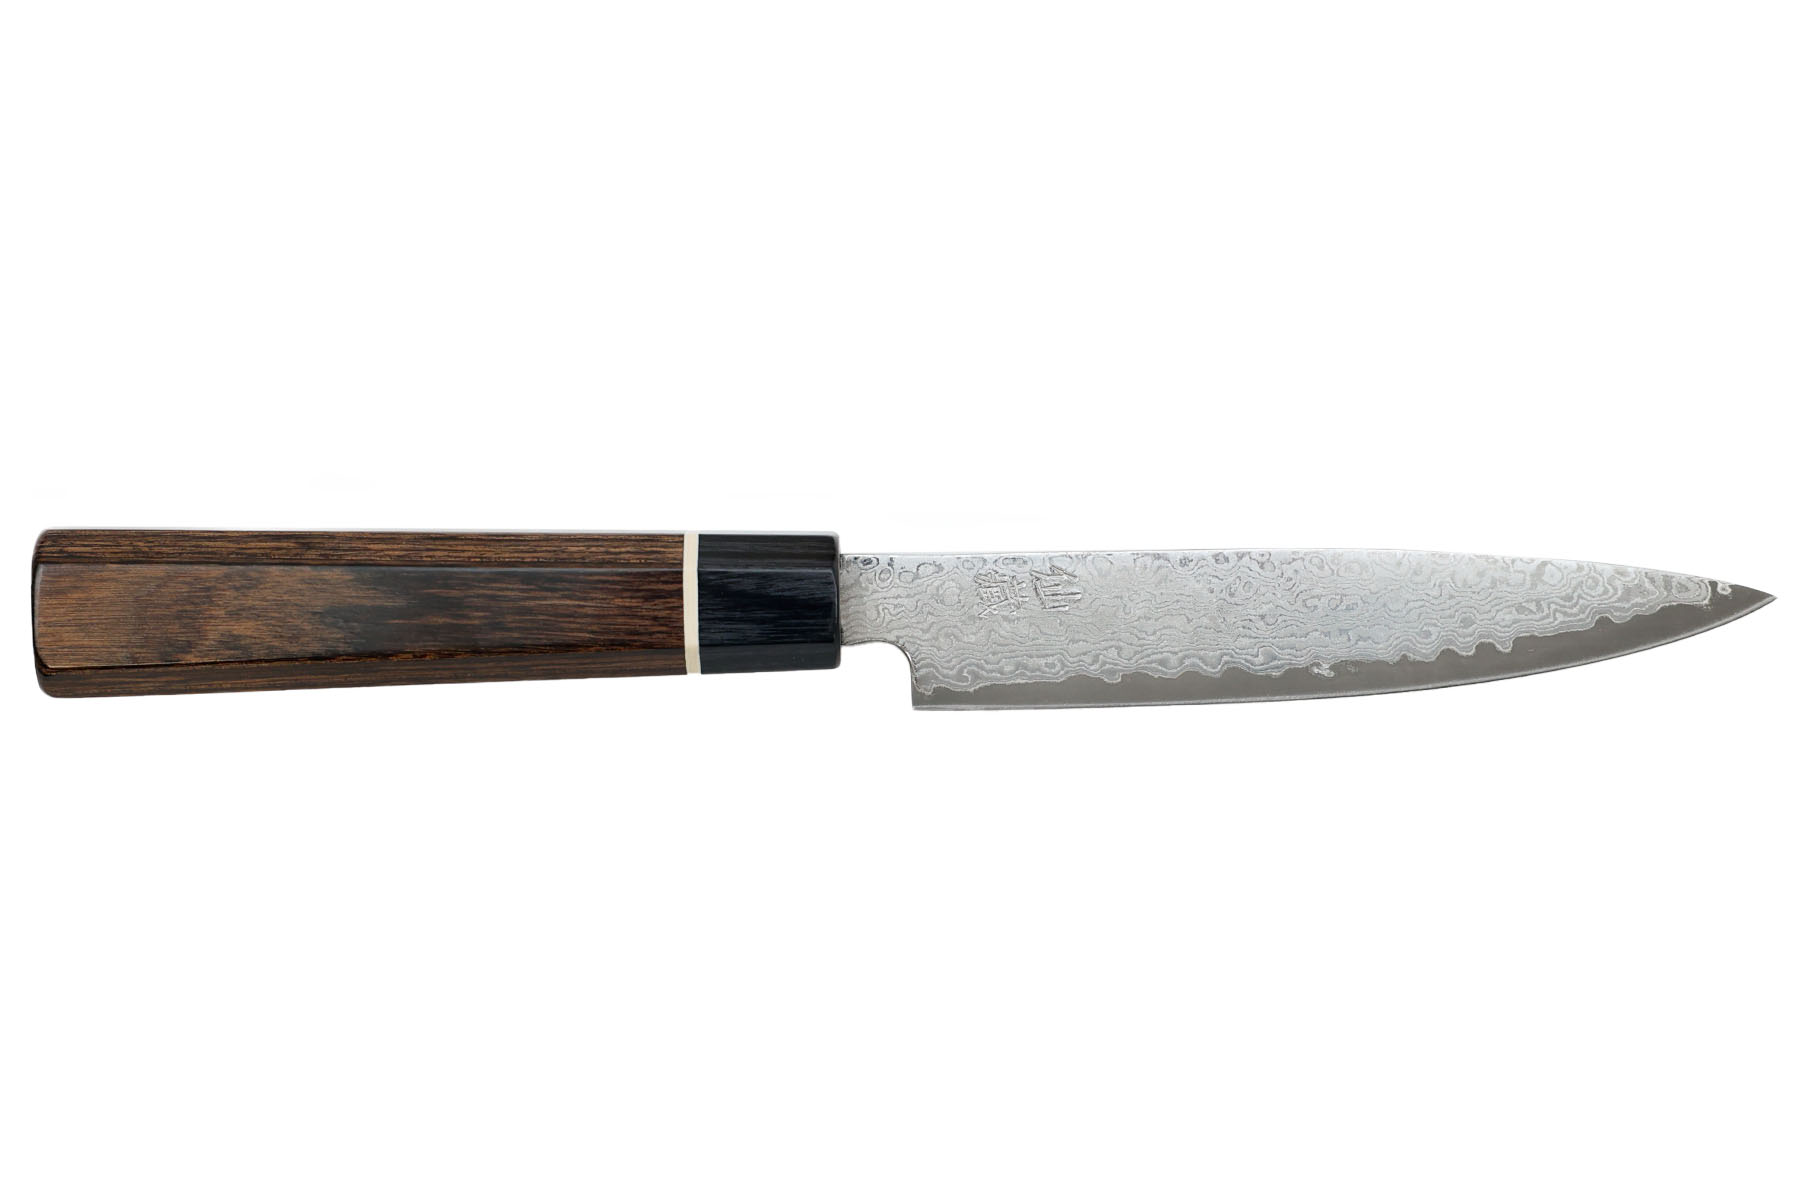 Couteau japonais Suncraft Senzo Damas - Couteau petty 12 cm